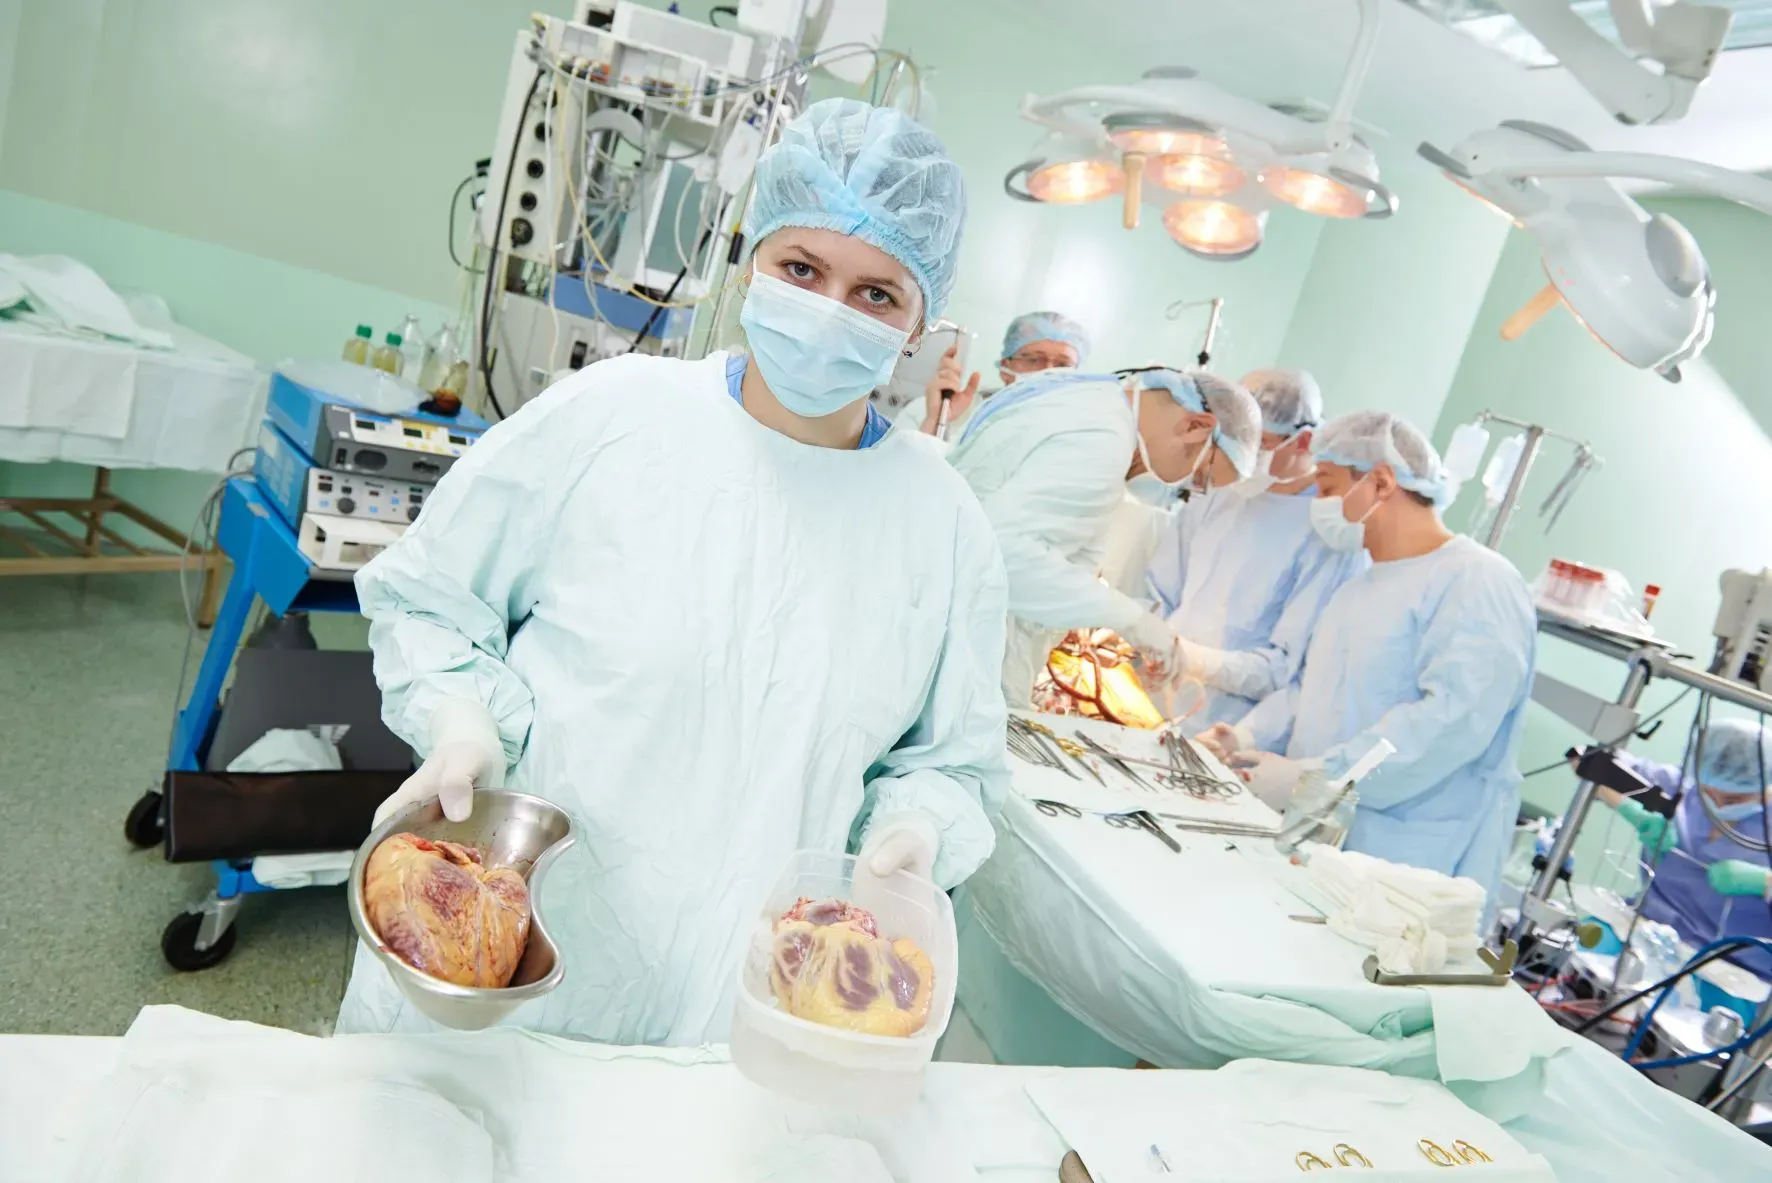 Kontrowersje związane z ideą transplantacji narządów 